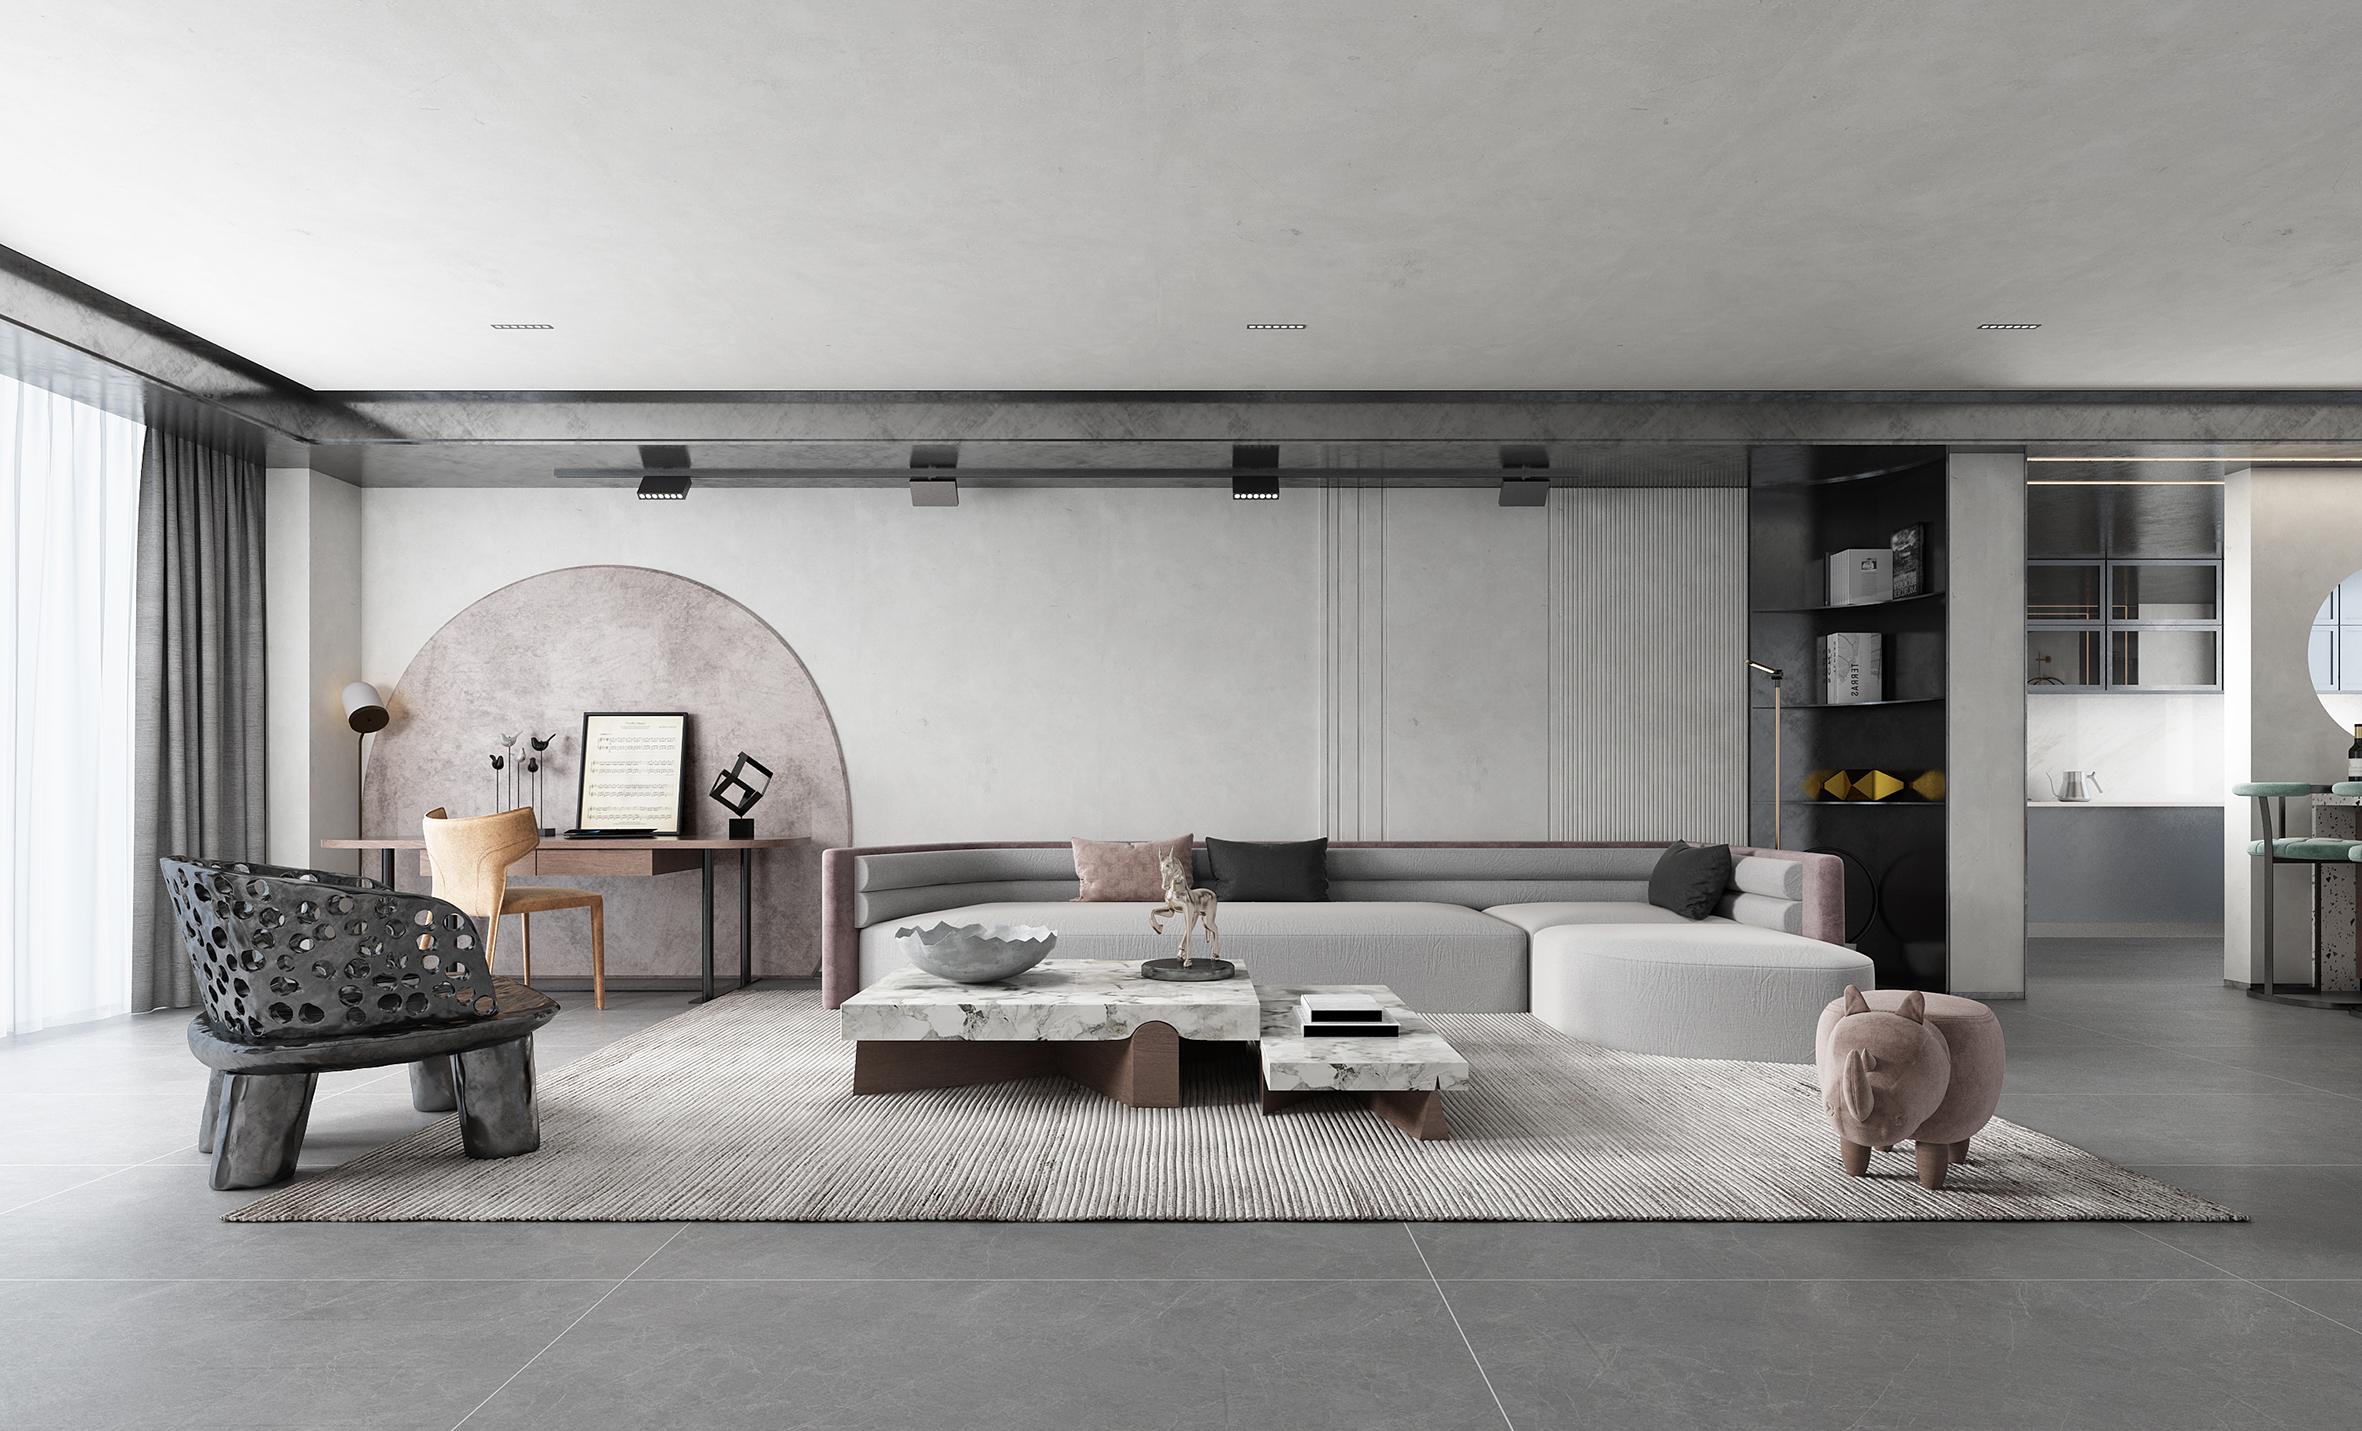 浅灰色瓷砖怎么搭配墙面和家具的颜色